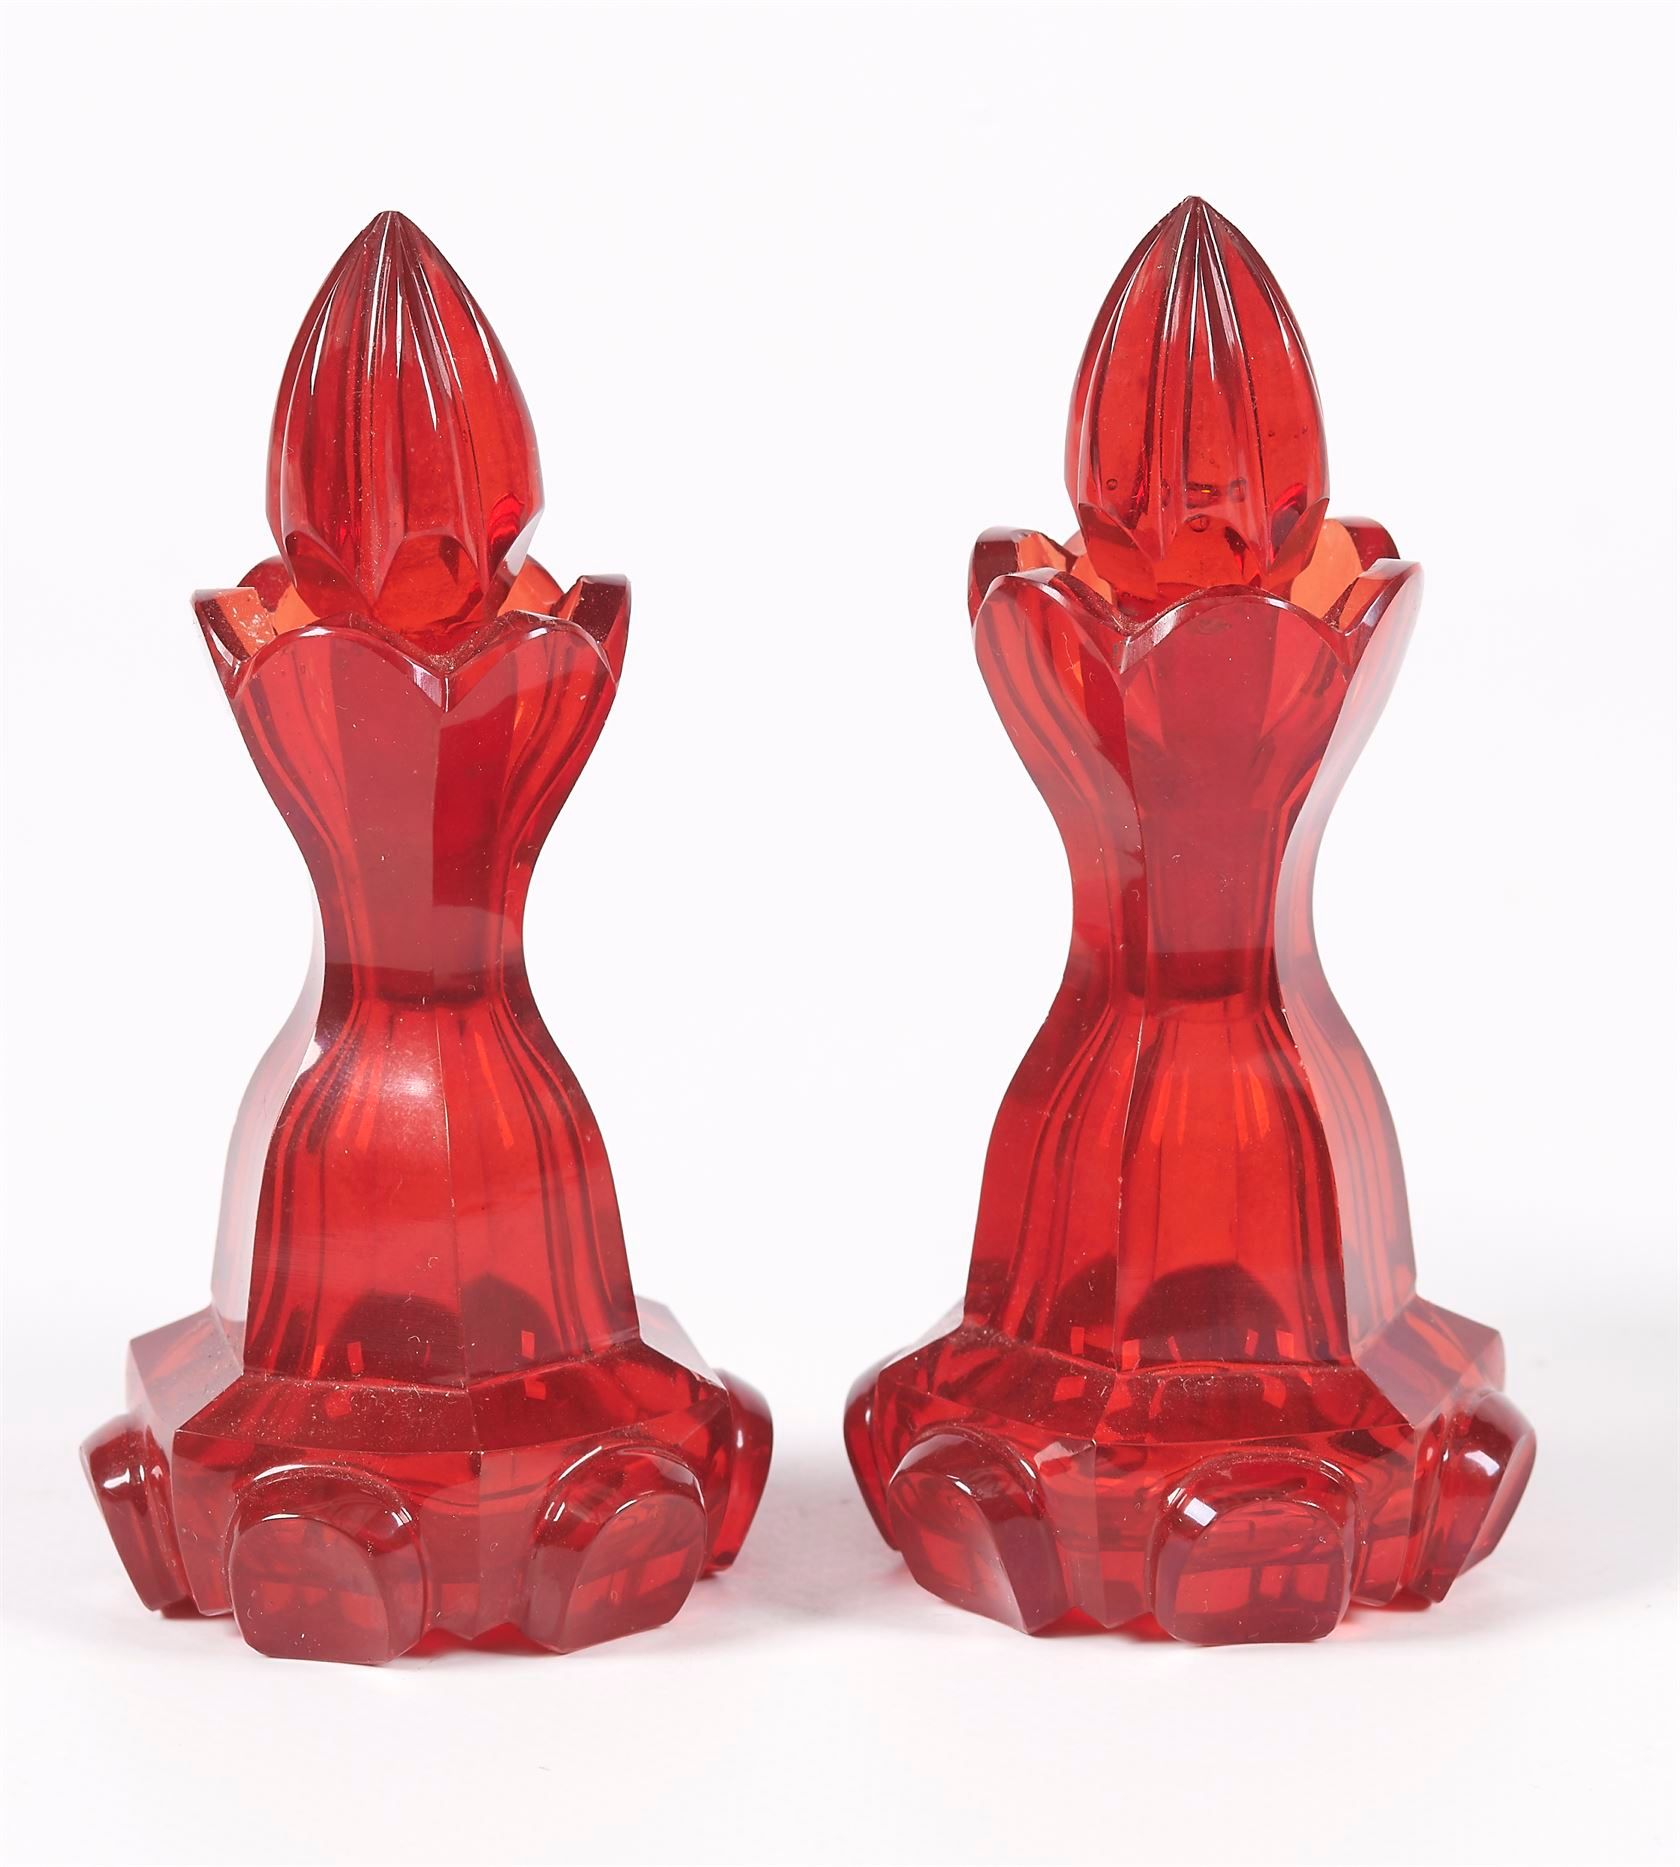 Null 一对红宝石色的切割水晶香水瓶和一个带金色亮点的翠绿水晶瓶。查理十世时期。高度为10和9厘米。